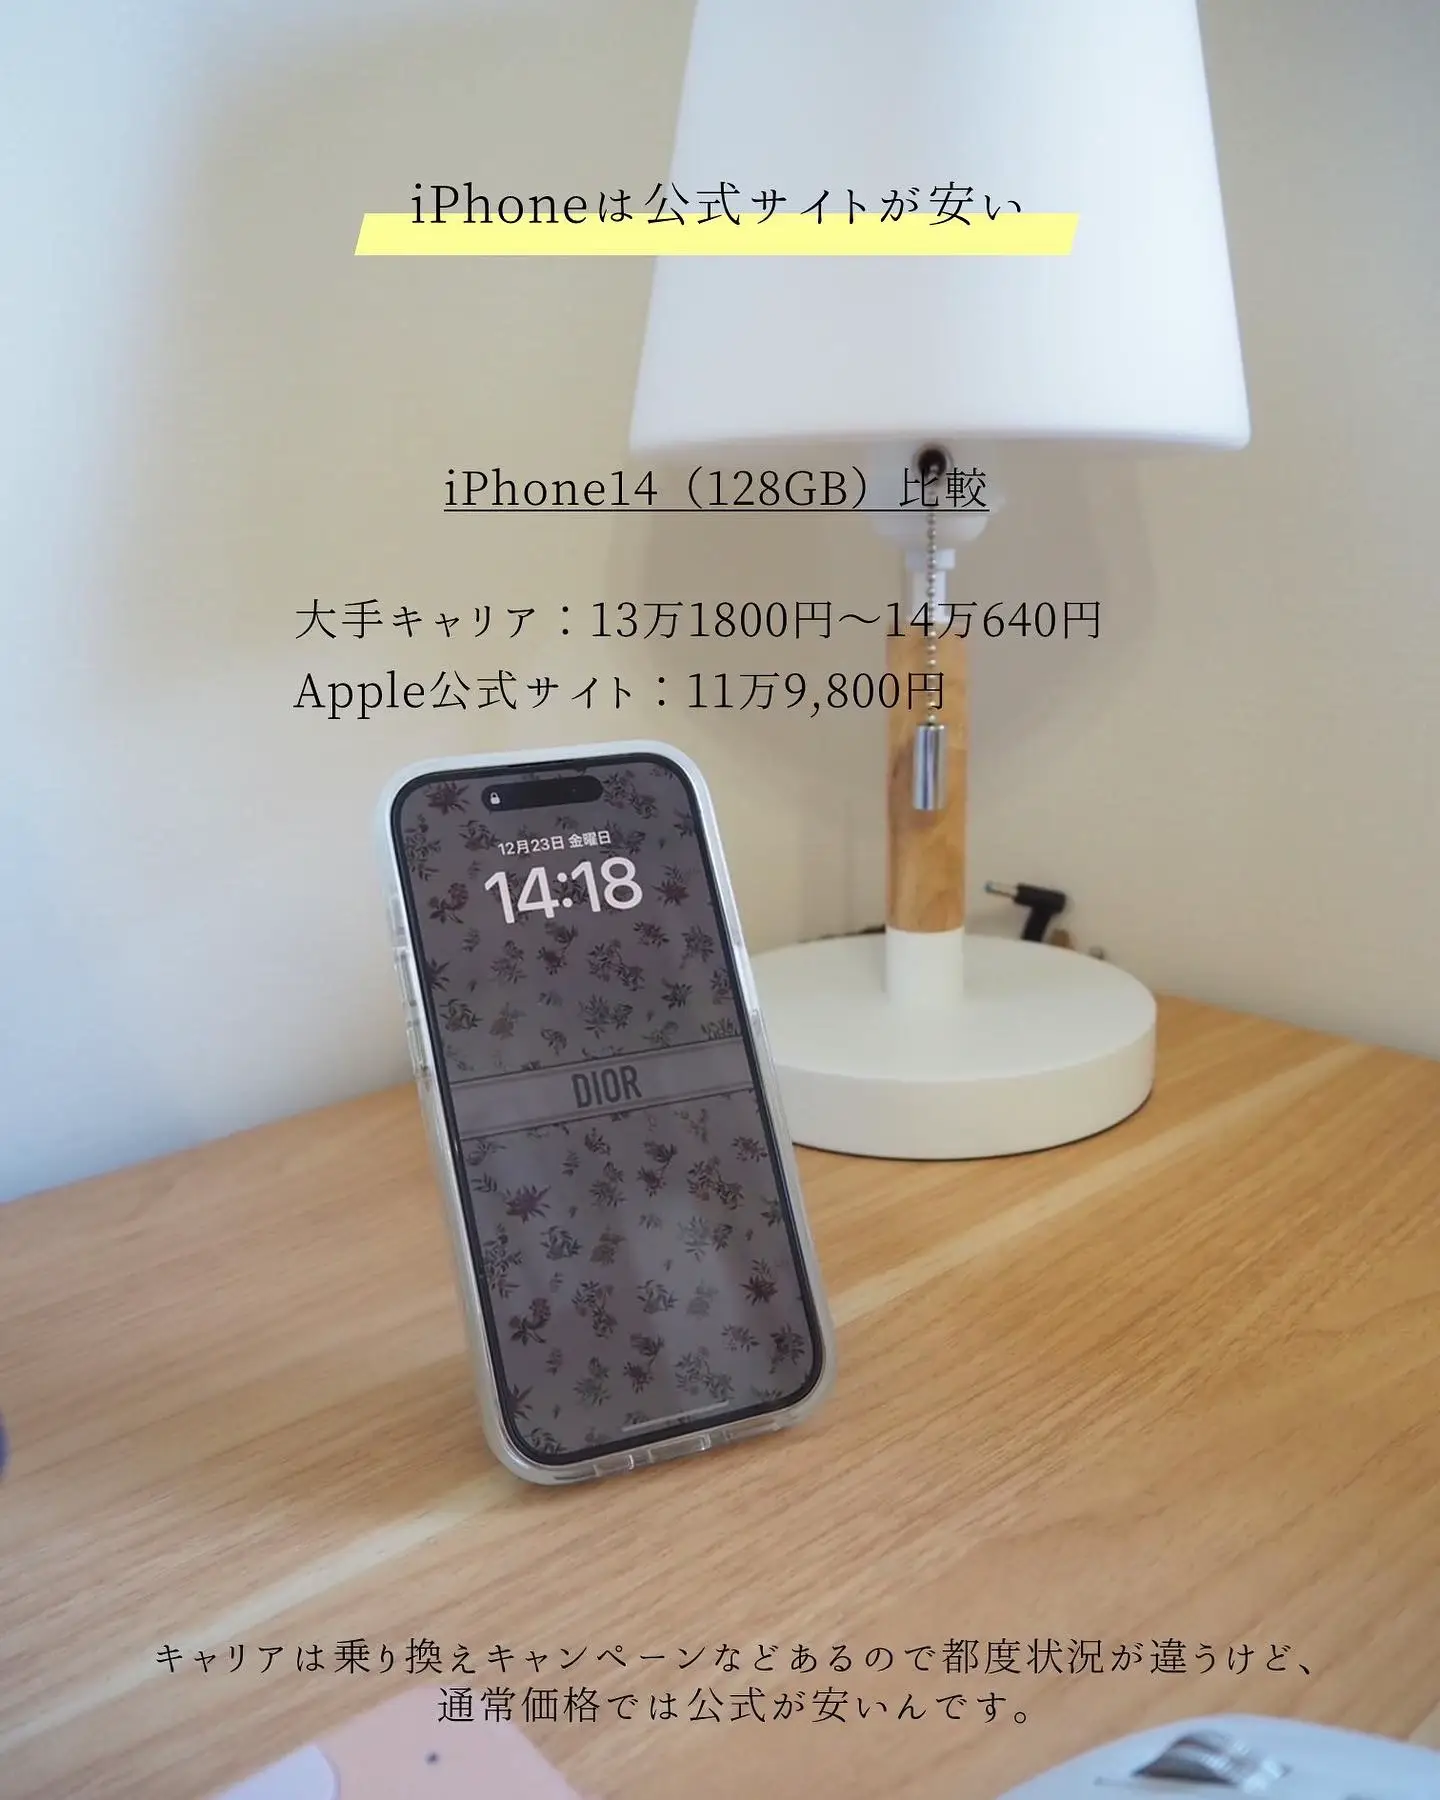 chinami様限定 iPhone 7 128GB おまけ付き - スマートフォン本体